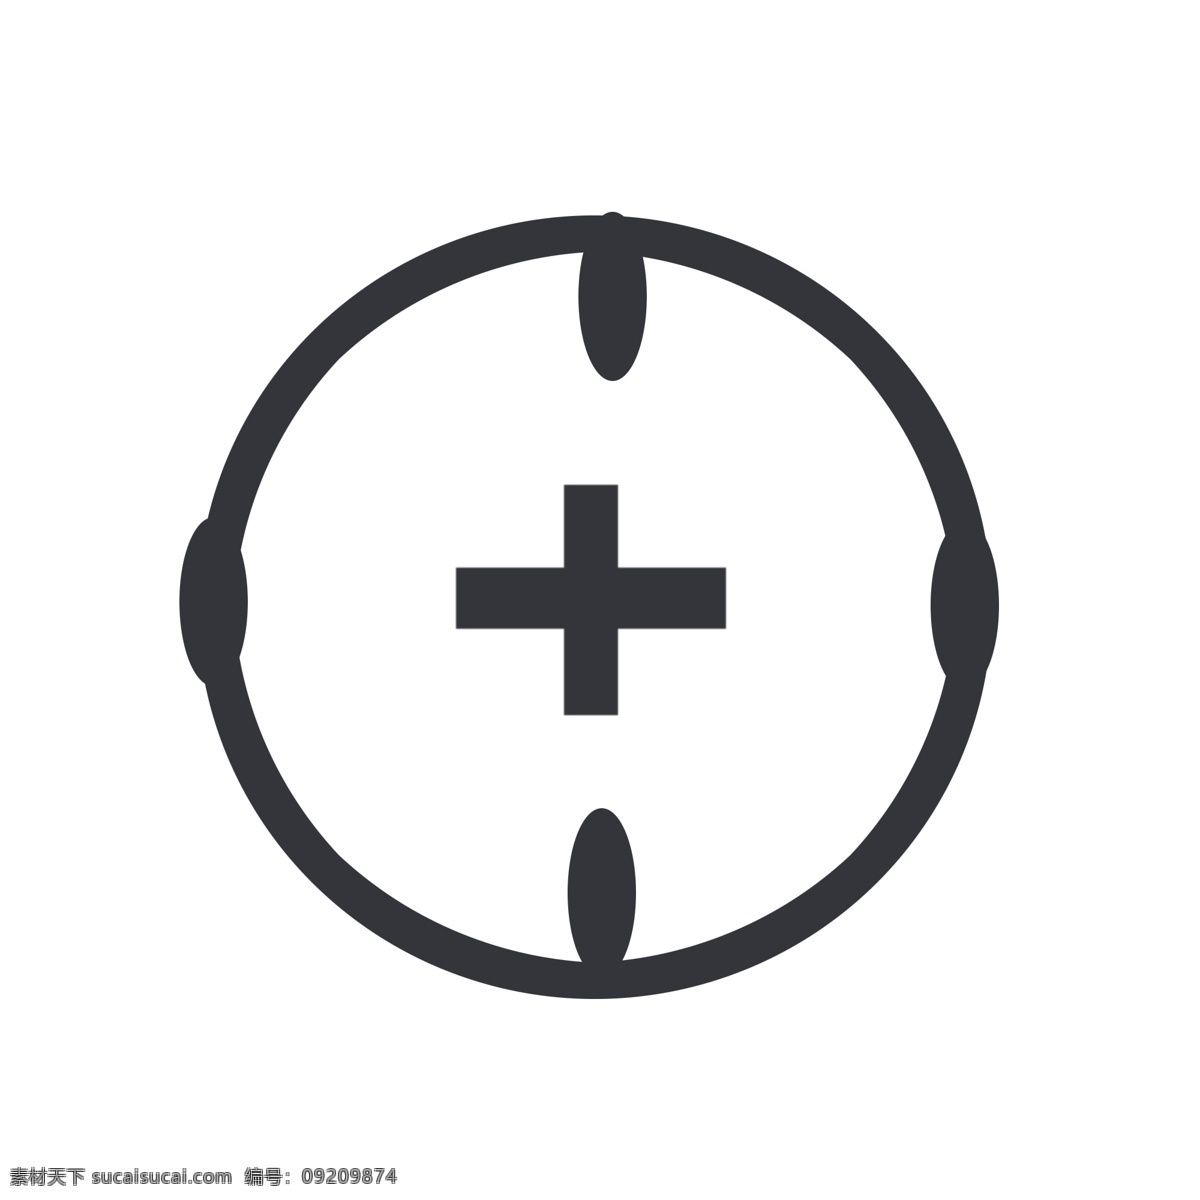 圆形 强调 灰色 符号 瞄准 图标 标志 标注 强调符号